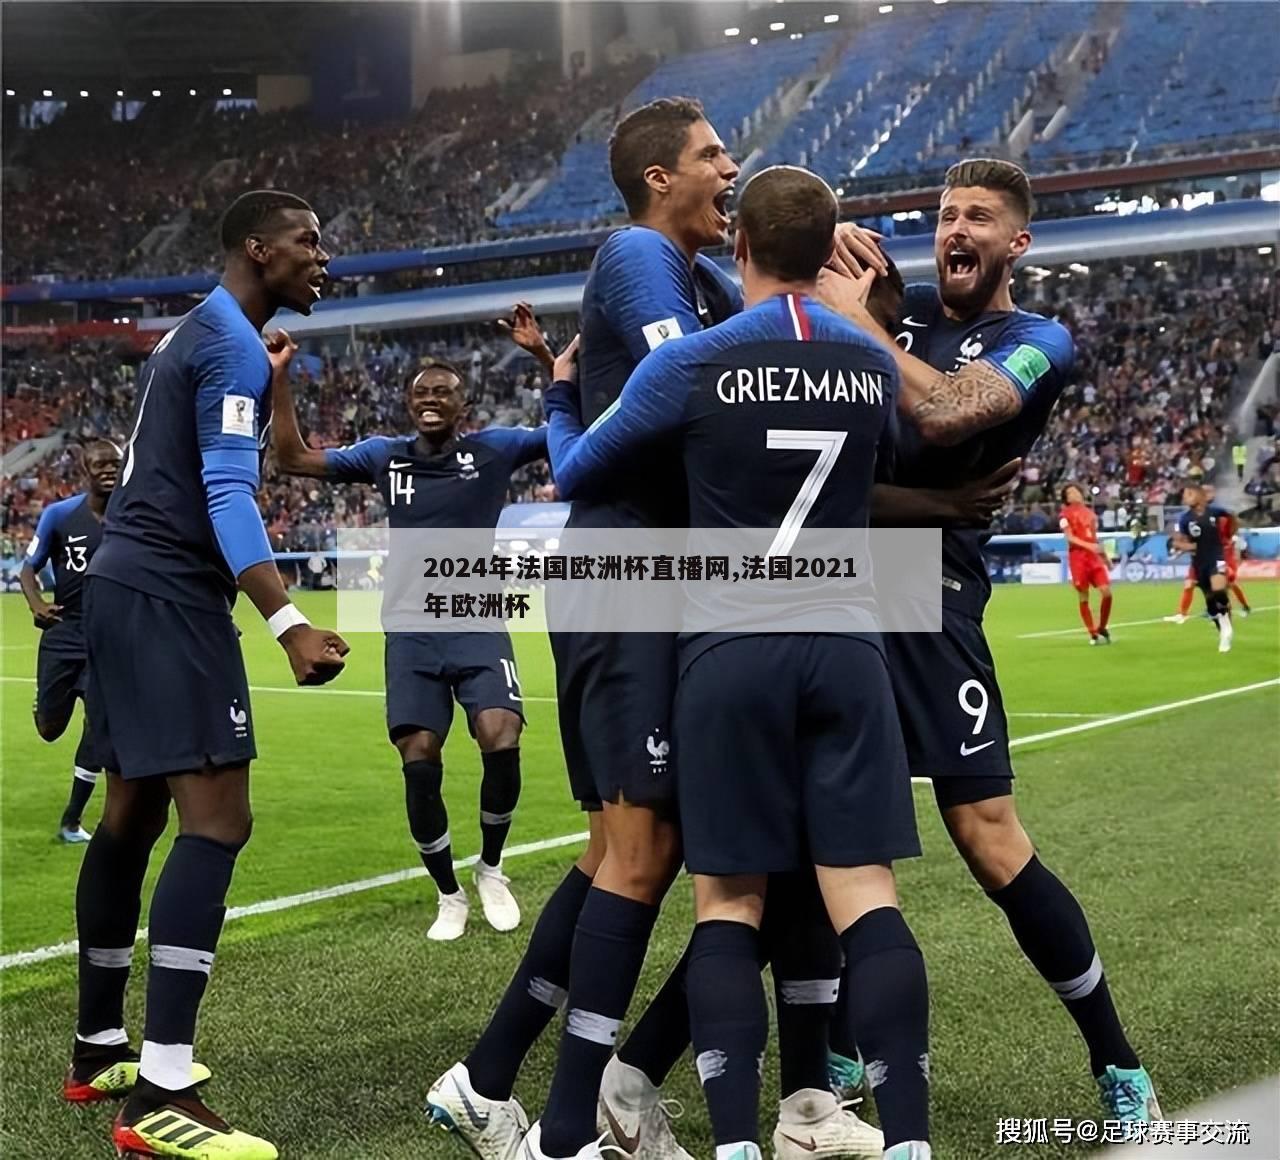 2024年法国欧洲杯直播网,法国2021年欧洲杯